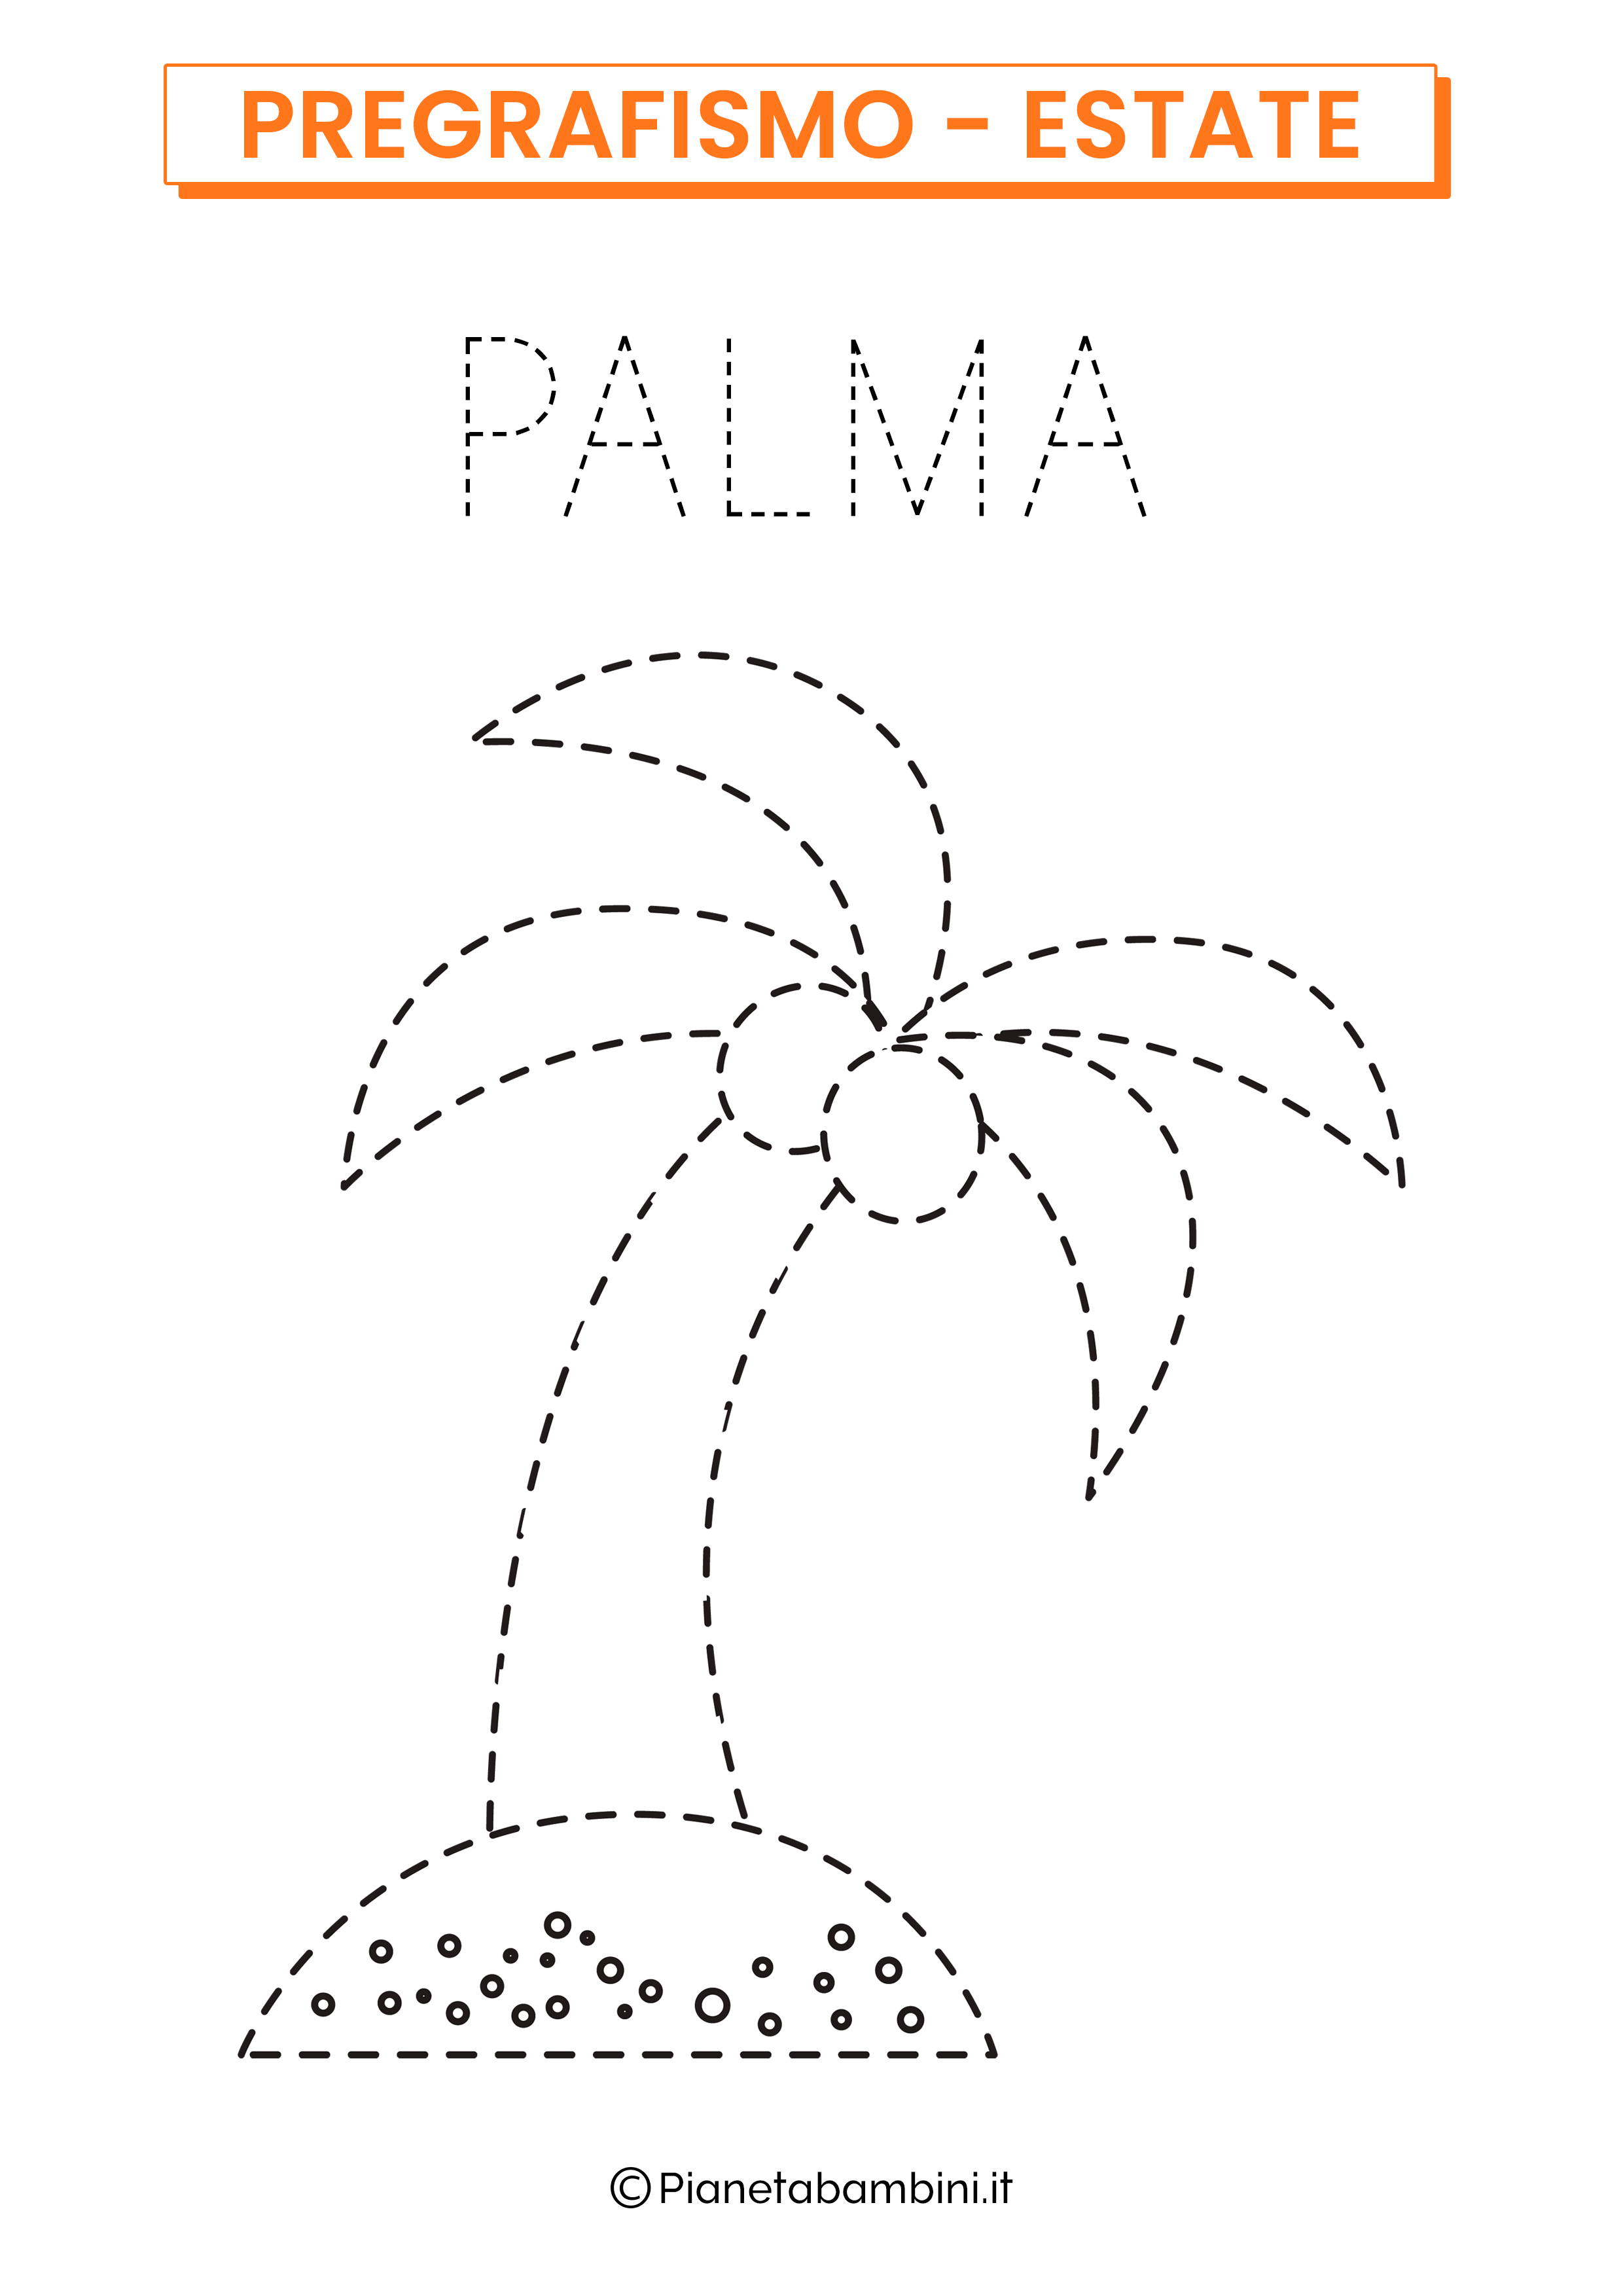 Scheda di pregrafismo sull'estate: la palma